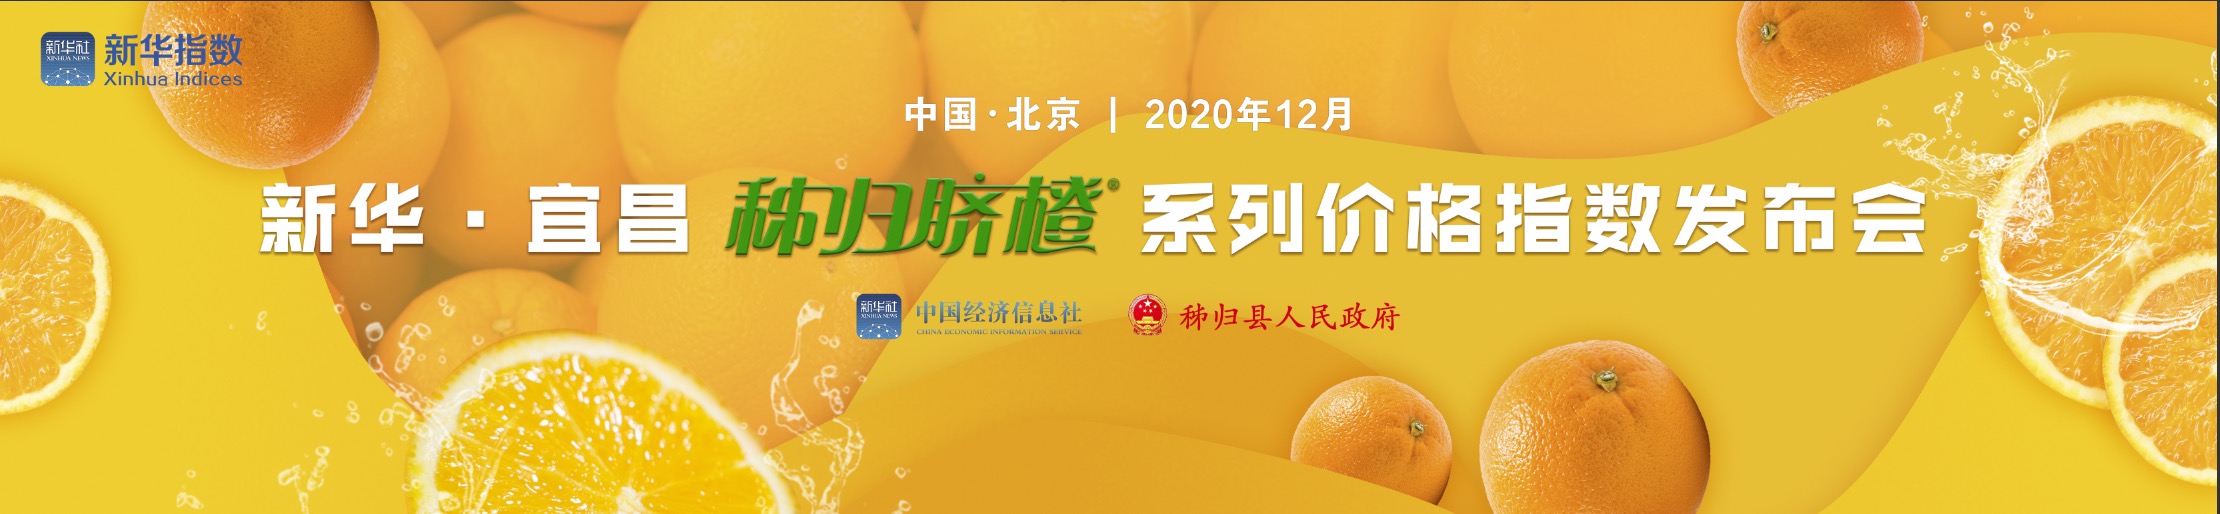 新华宜昌秭归脐橙系列价格指数发布会